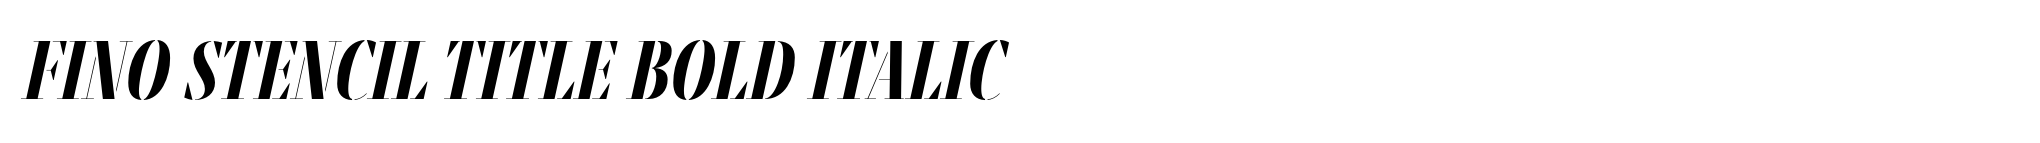 Fino Stencil Title Bold Italic image